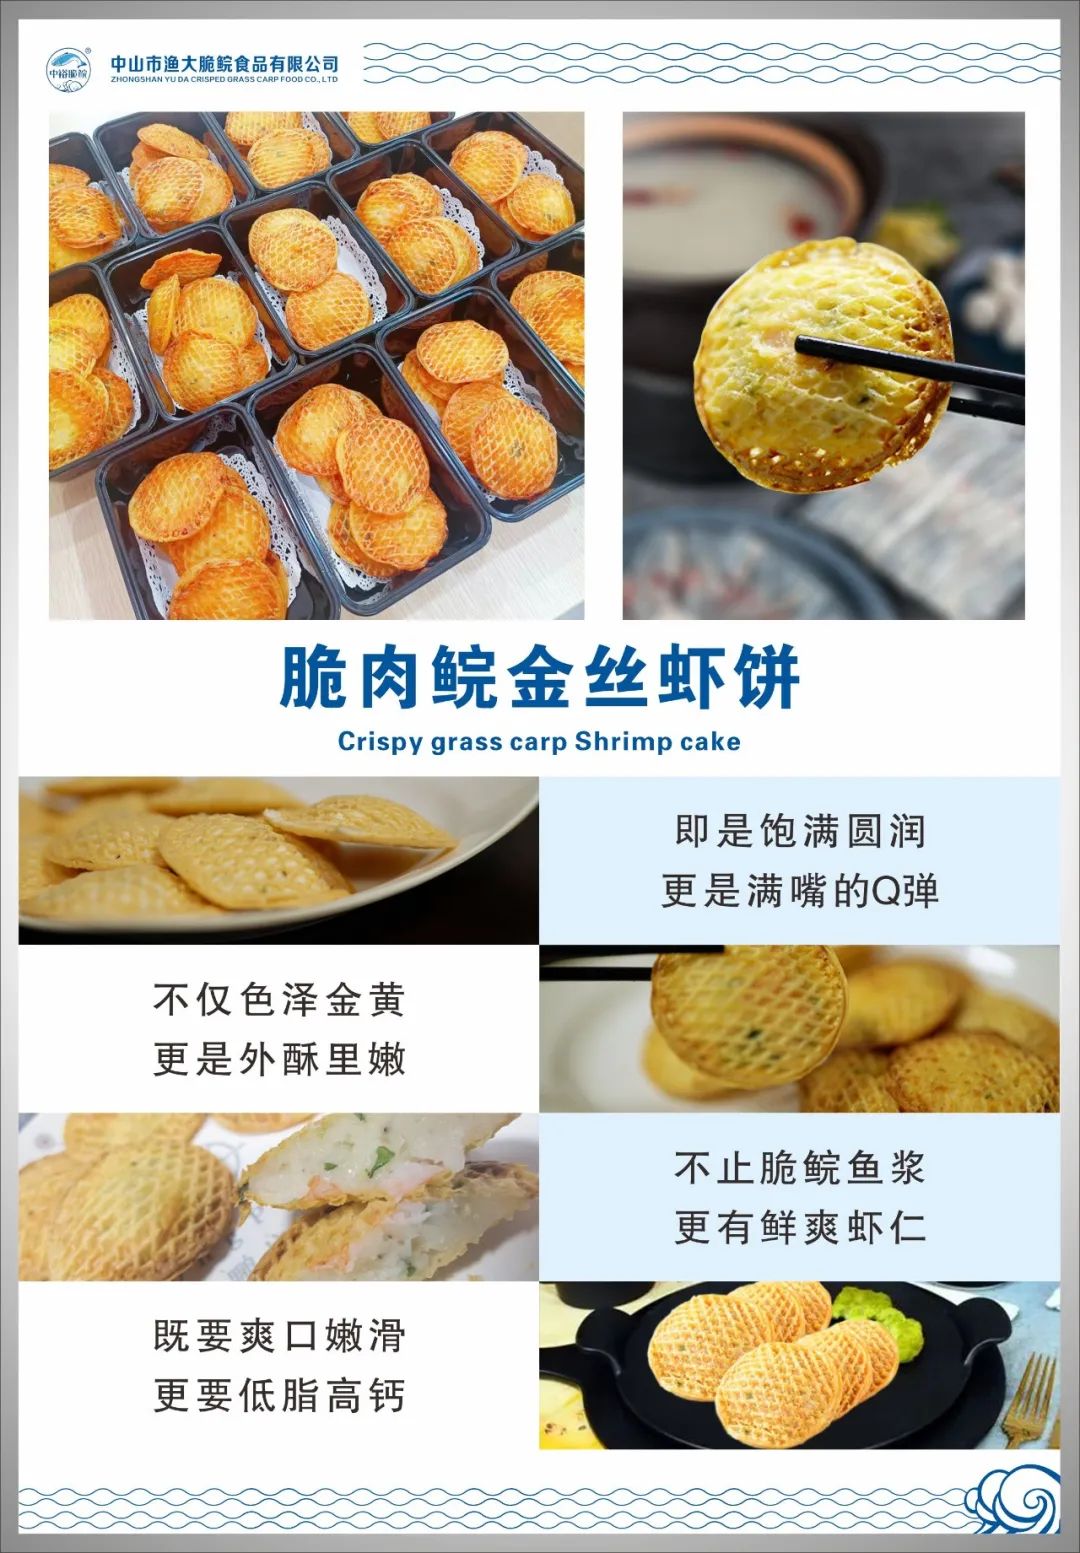 中山市渔大脆鲩食品有限公司——爽口、美味、好营养(图5)